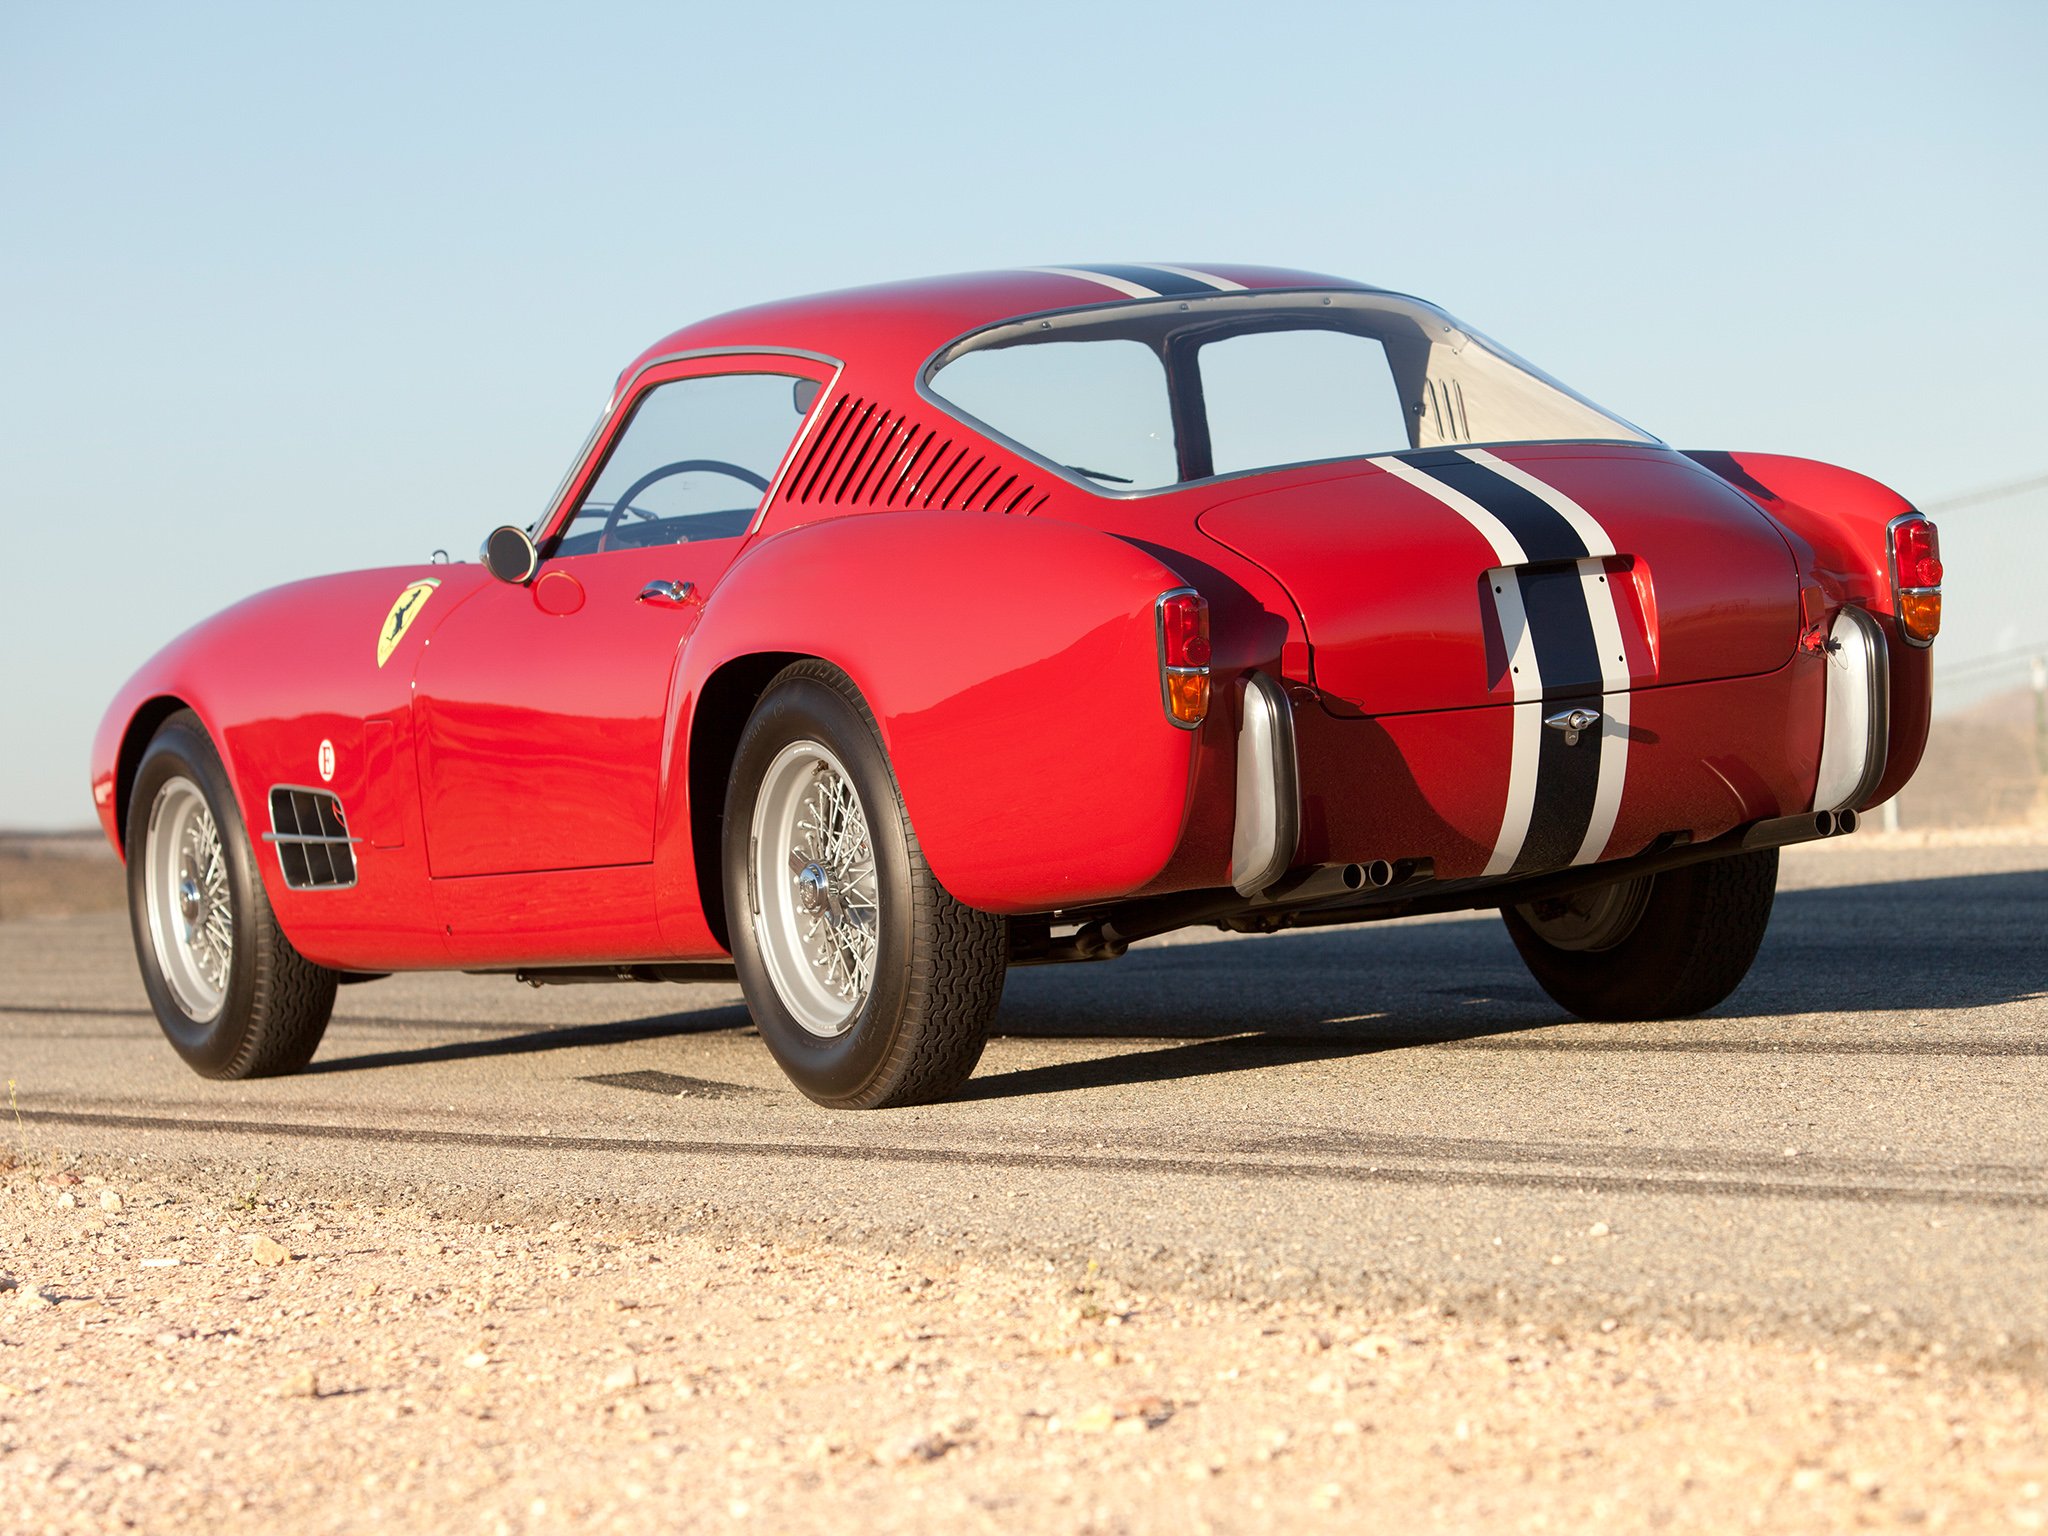 1957, Ferrari, 250, G t, Tour de france, 14 louver, Scaglietti, Berlinetta, Supercar, Race, Racing, Retro Wallpaper